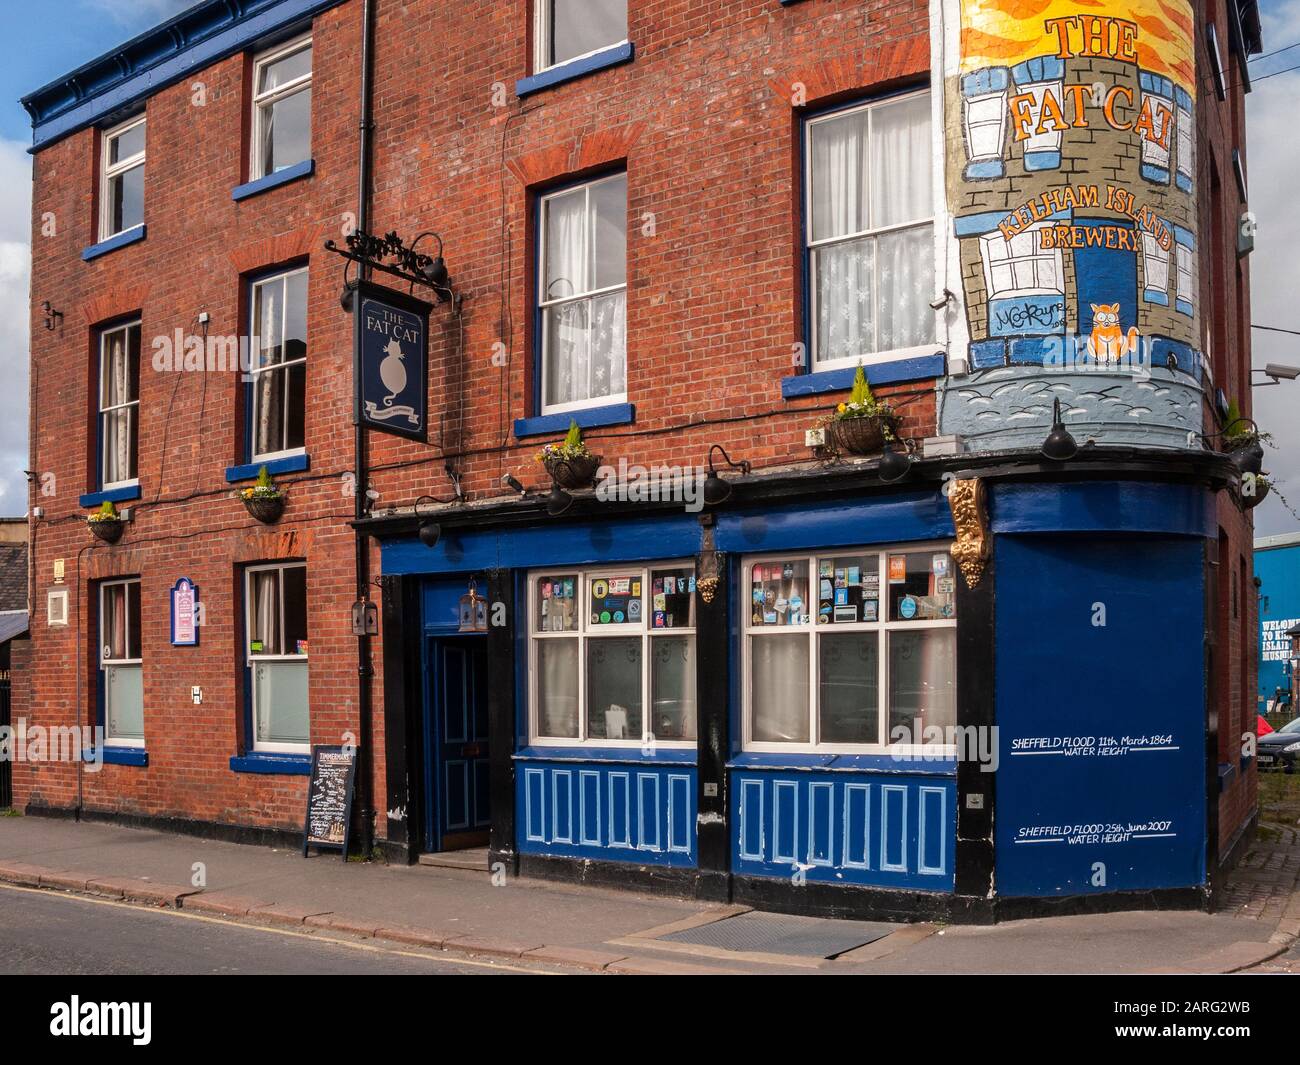 The Fat Cat Pub, Alma Street, Kelham Island, Sheffield Stock Photo